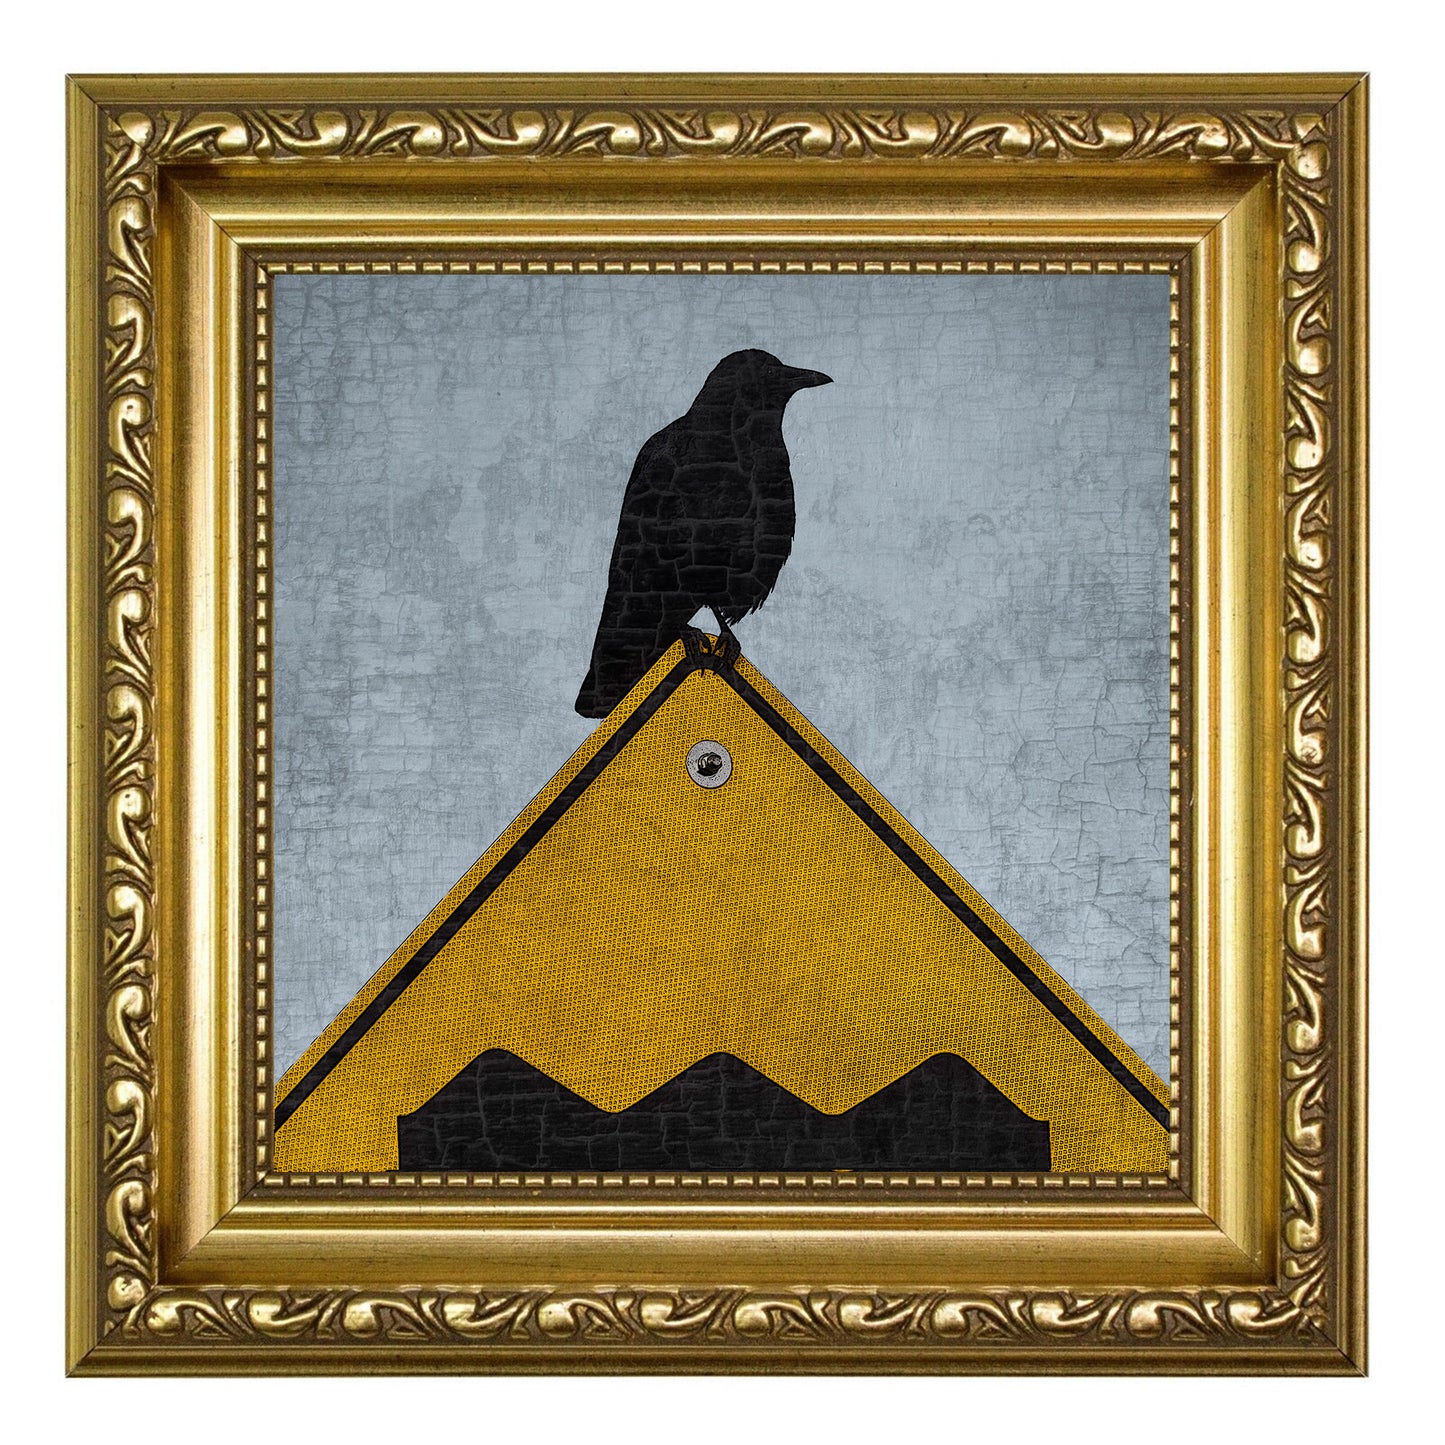 ROUGH ROAD AHEAD - Fine Art Print, Blue Crow Series